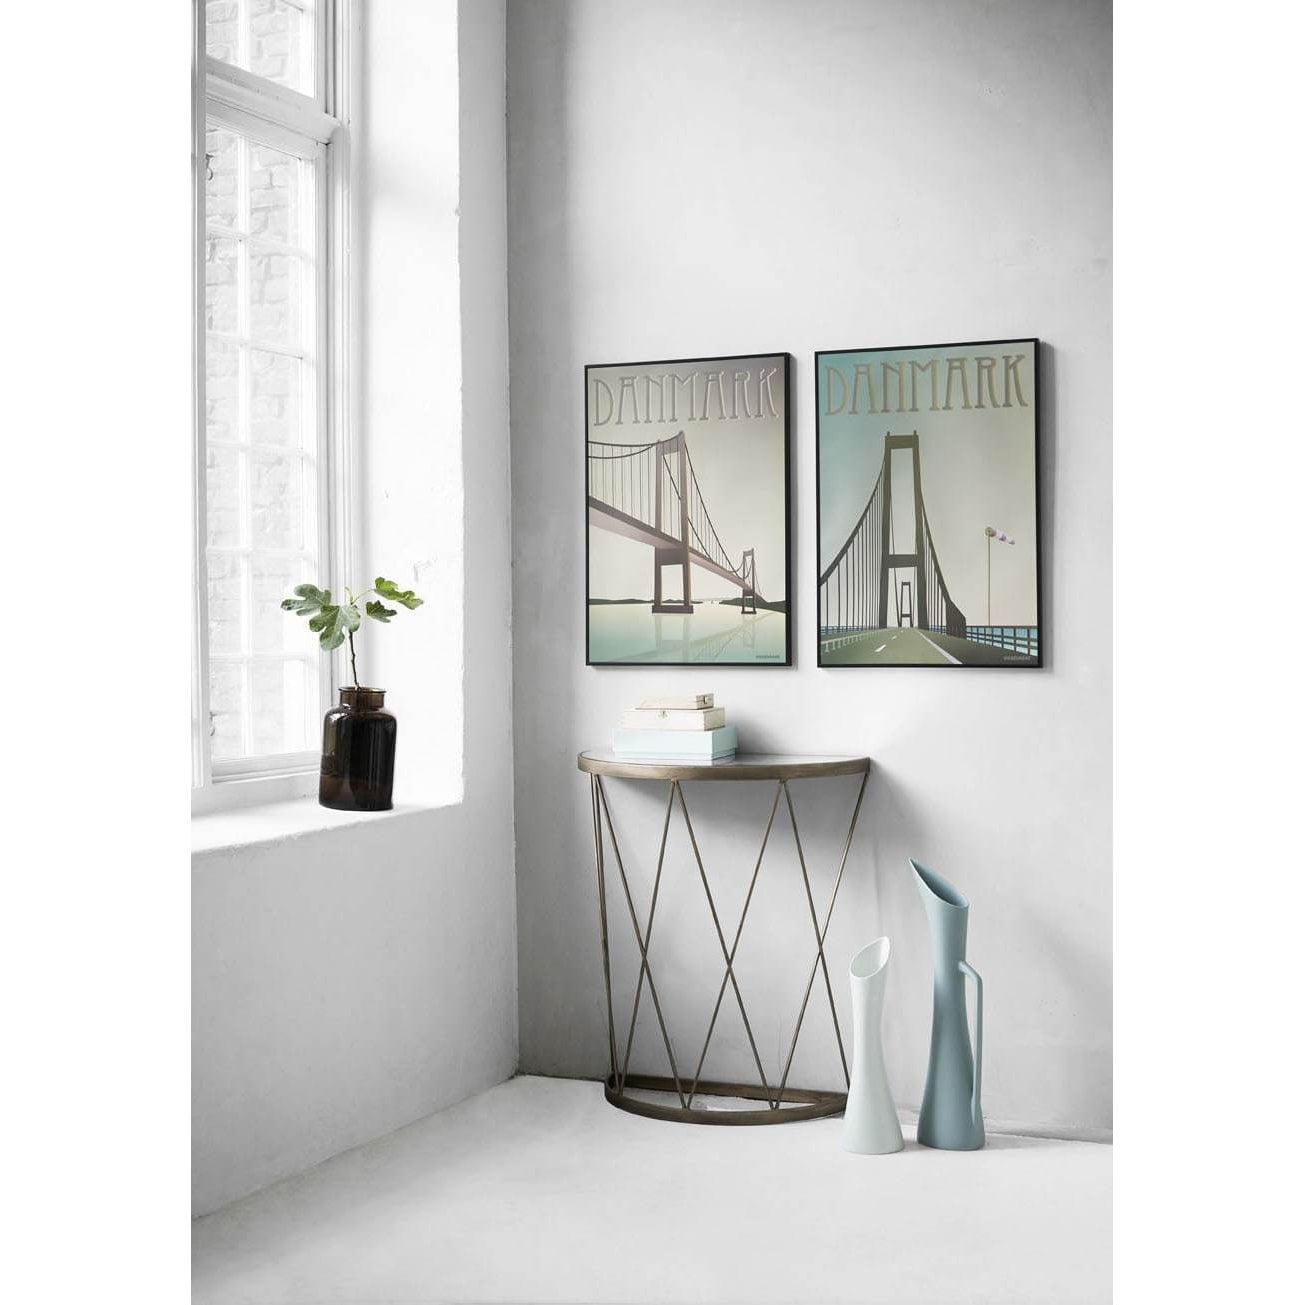 Vissevasse Dänemark Storbælts Bridge Poster, 15 x21 cm